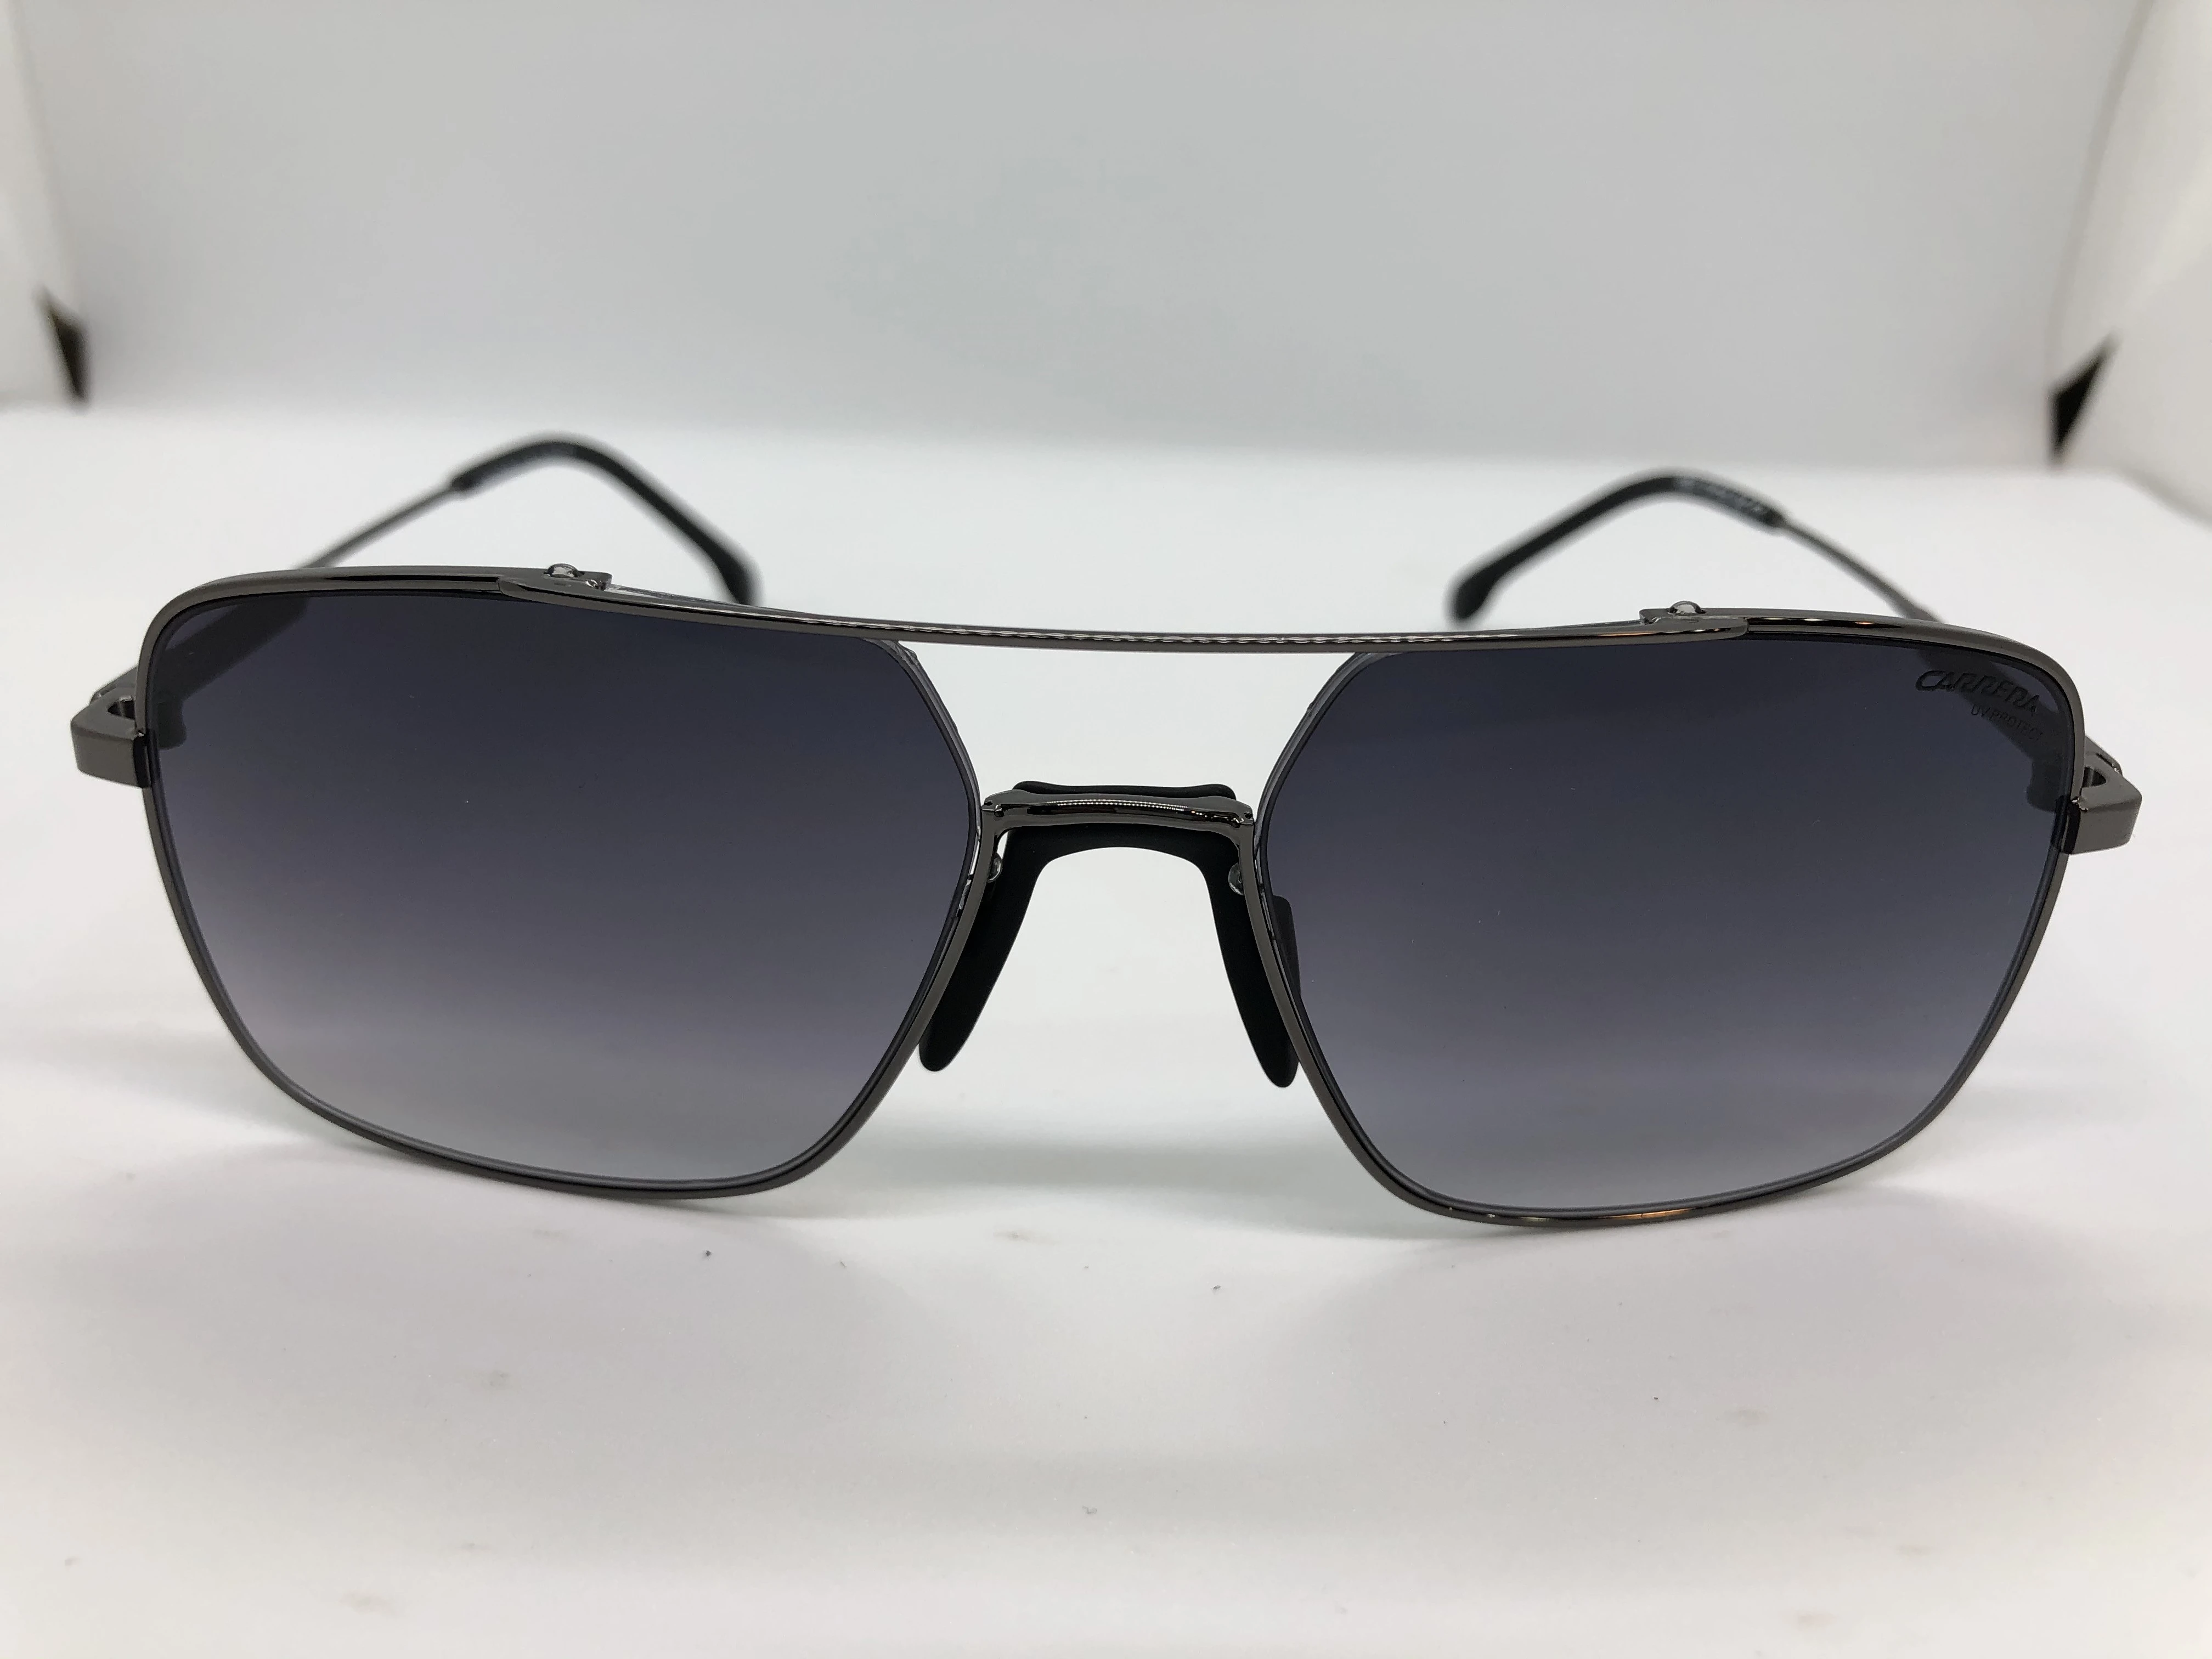 نظارة شمسية - من كاريرا - باطار اسود معدن - وعدسات سوداء متدرجة - وزراع معدن اسود - بشعار الماركة - رجالي